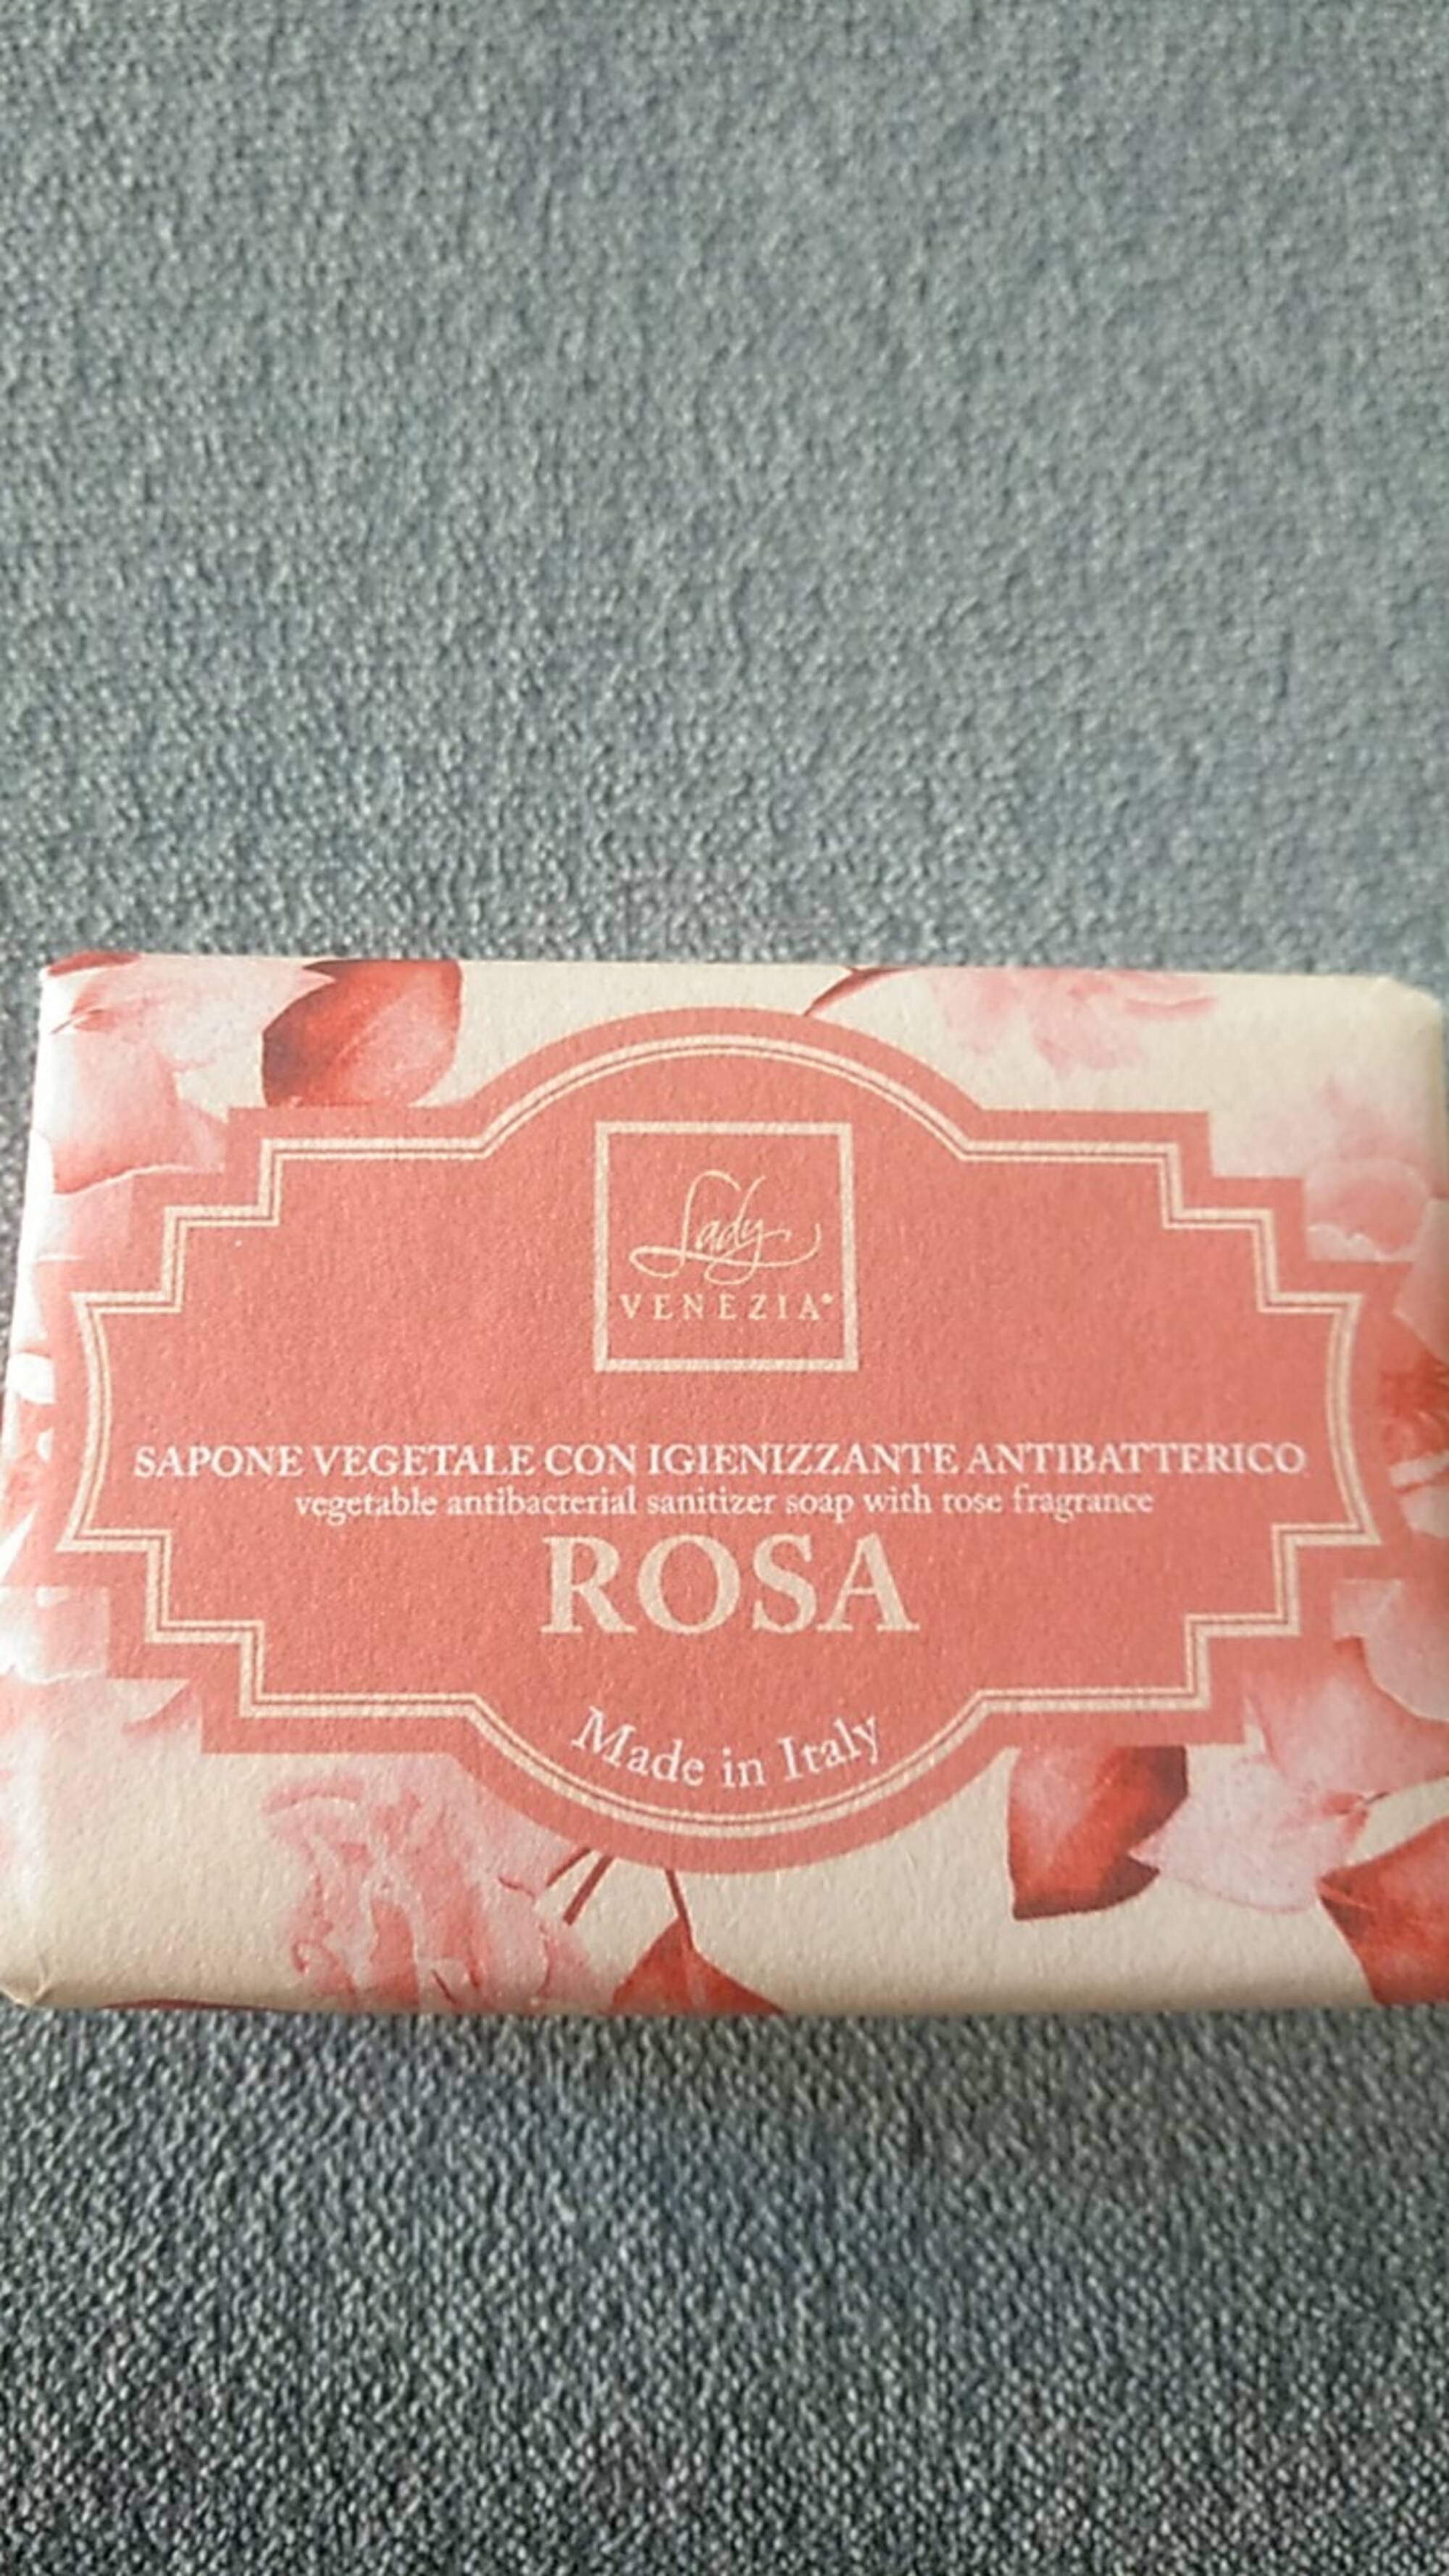 LADY VENEZIA - Rosa - Sapone vegetale  con igienizzante